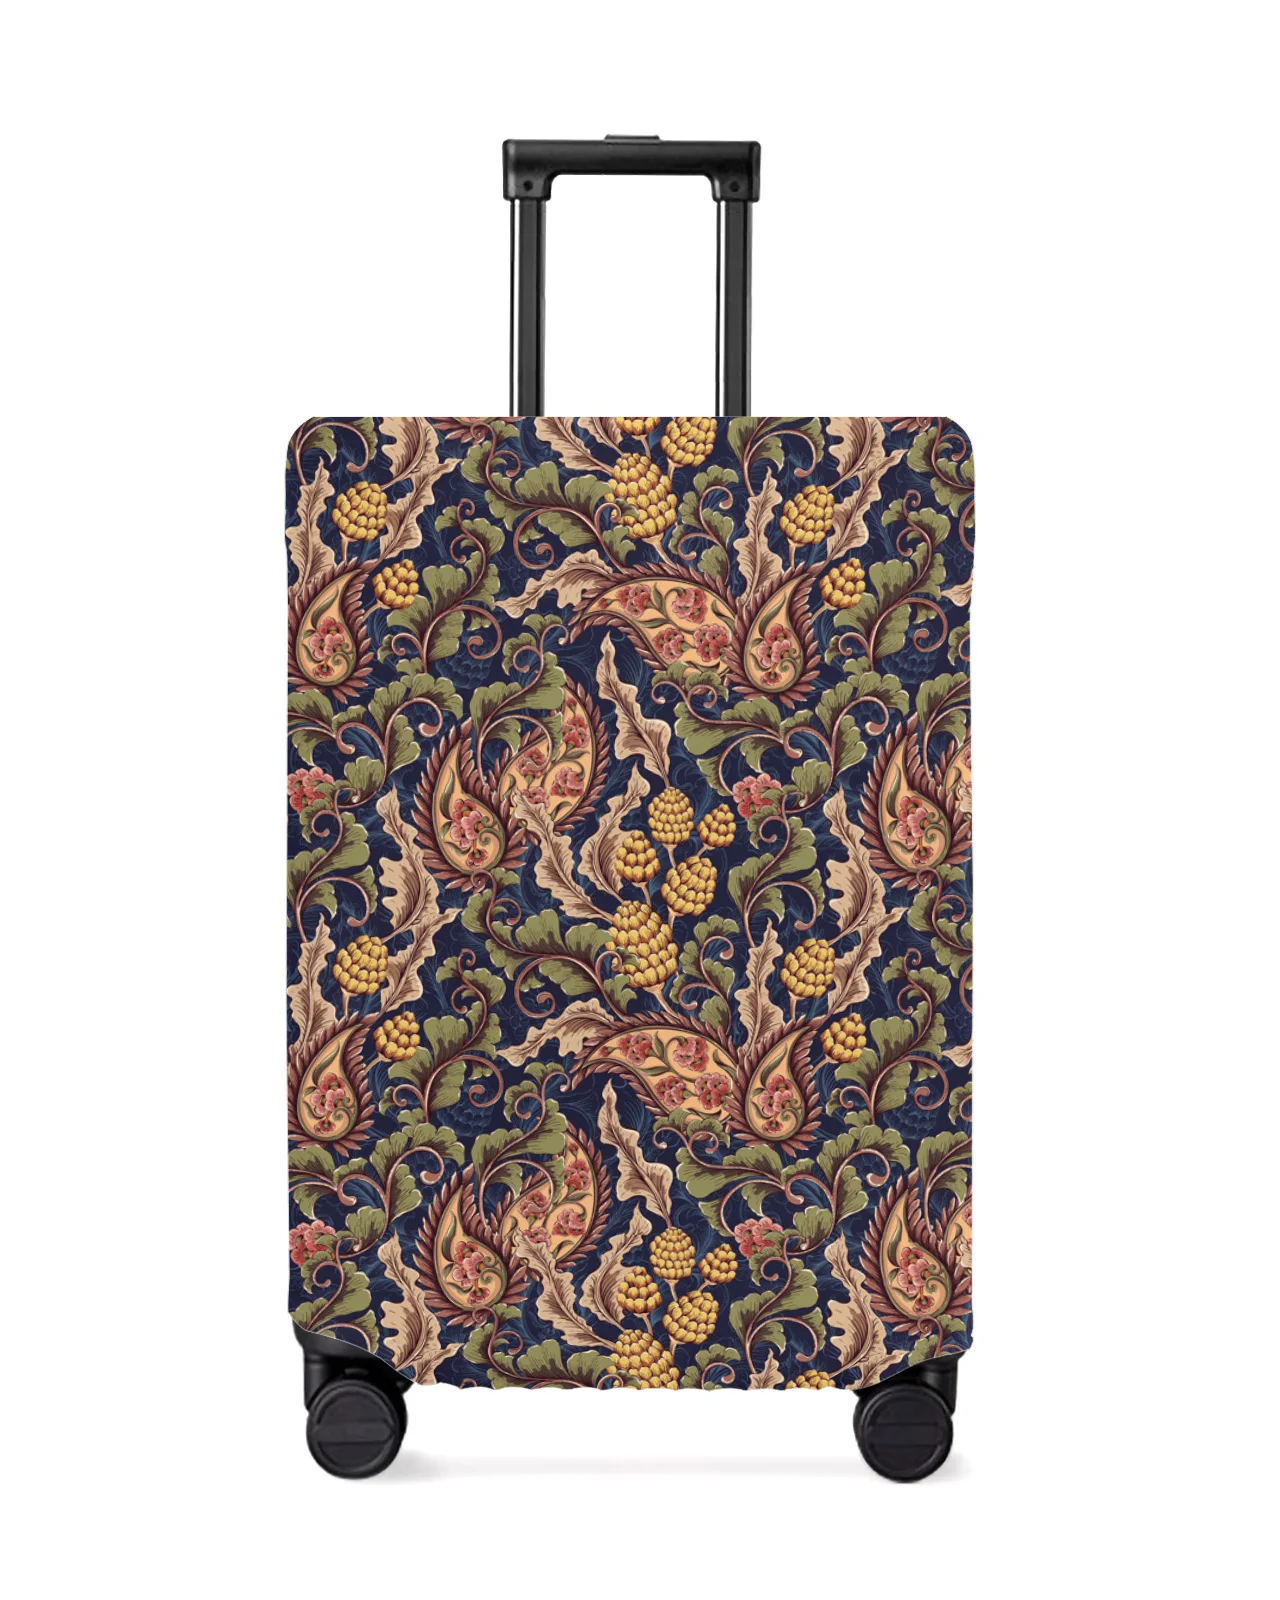 funda-protectora-de-equipaje-de-viaje-con-patron-de-hojas-de-plantas-de-cachemira-accesorios-de-maleta-funda-elastica-antipolvo